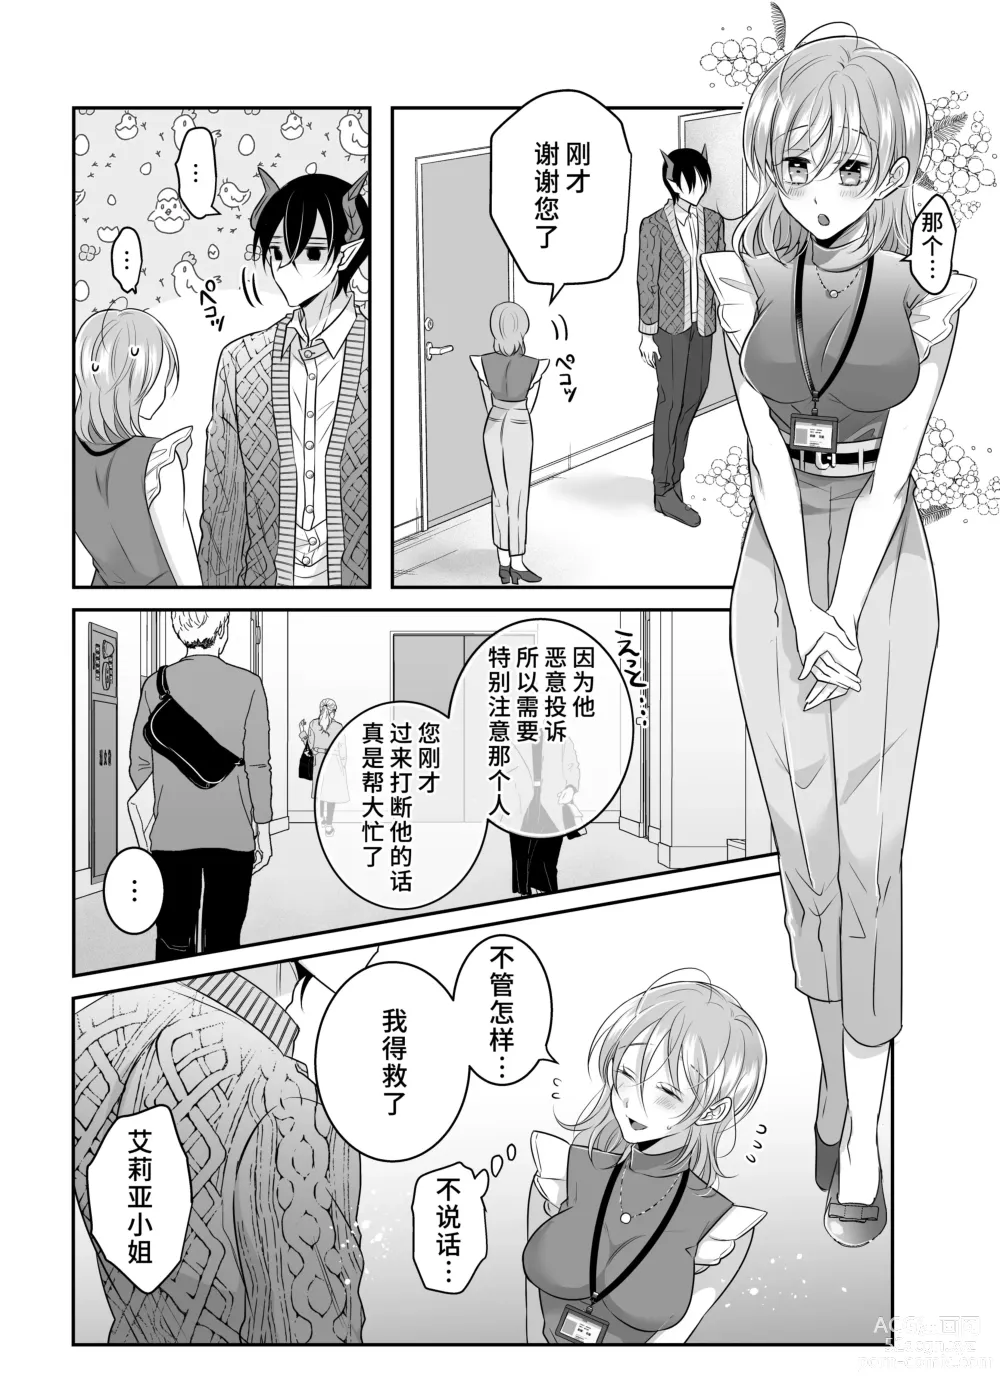 Page 6 of doujinshi 关于我的龙人同事发情期太过骇人这件事